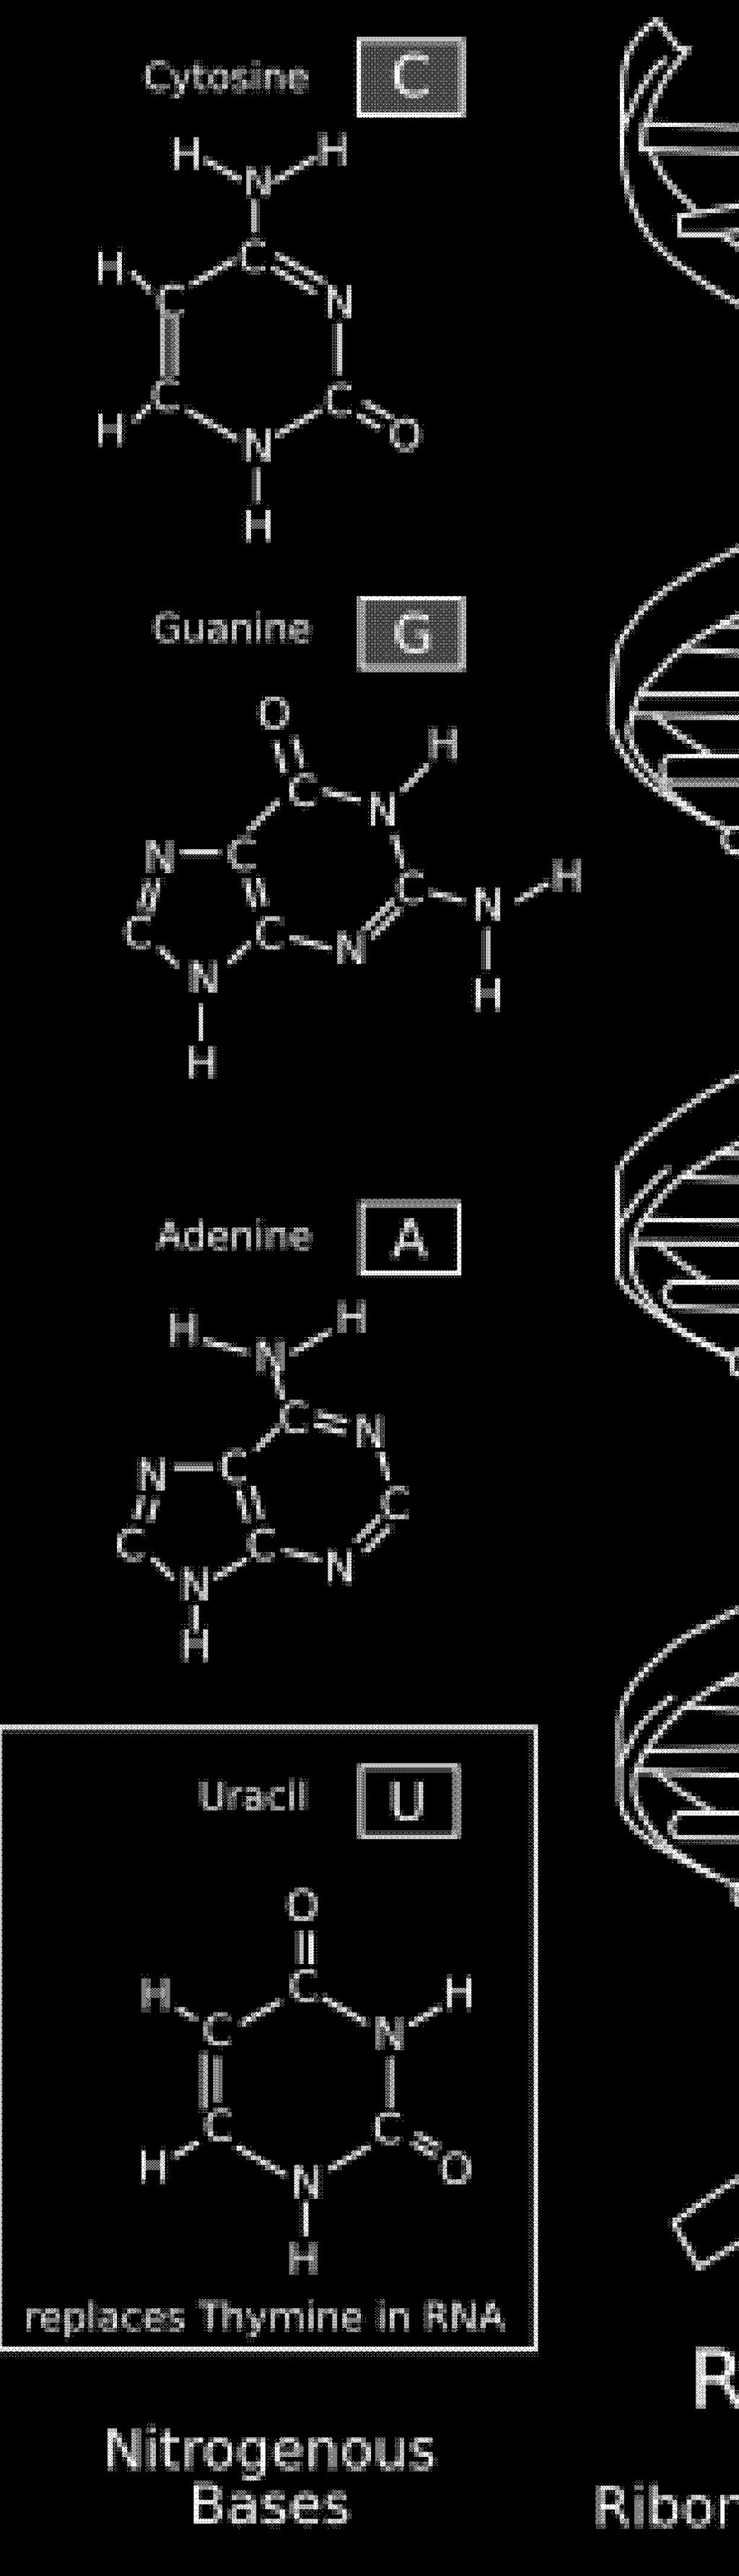 Ποιες είναι οι αζωτούχες βάσεις ; Στα νουκλεοτίδια του DNA η αζωτούχος βάση μπορεί να είναι μία από τις: αδενίνη